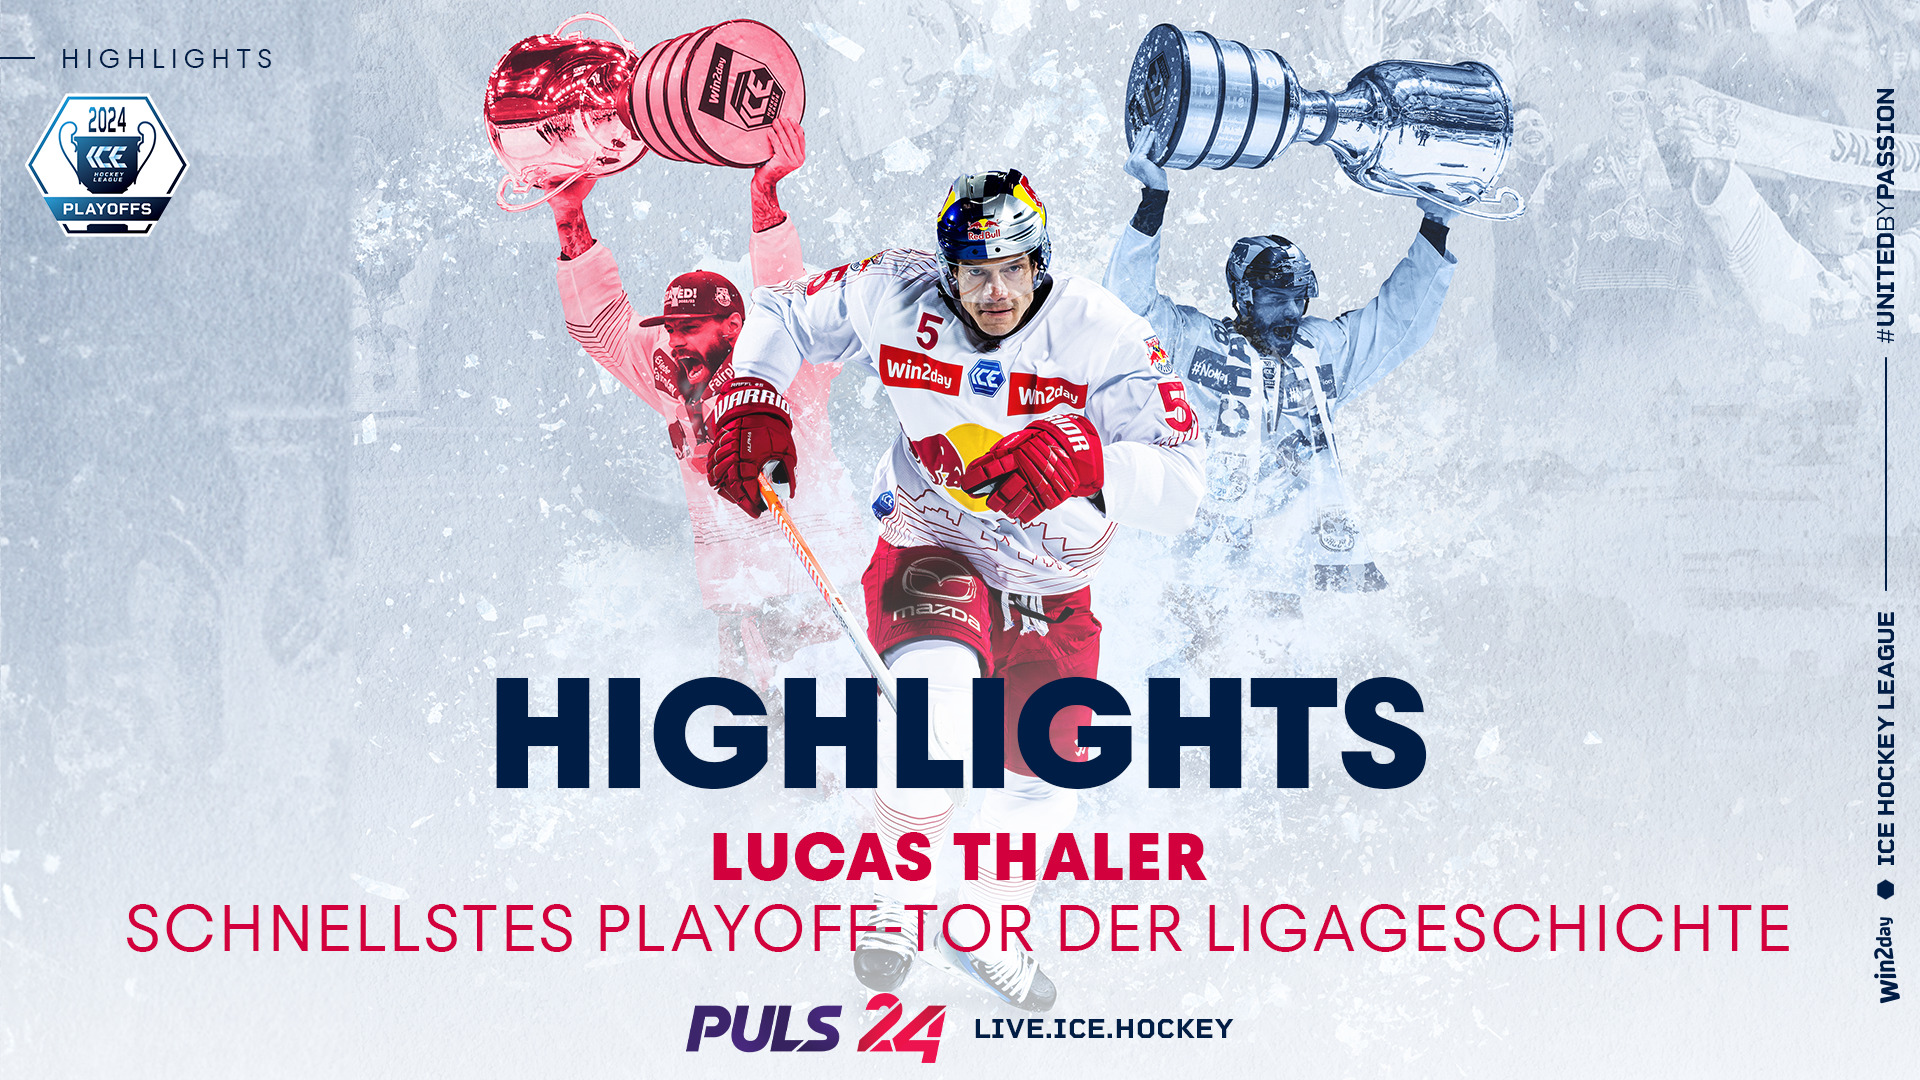 Lucas Thaler mit dem schnellsten Playoff-Tor der Ligageschichte